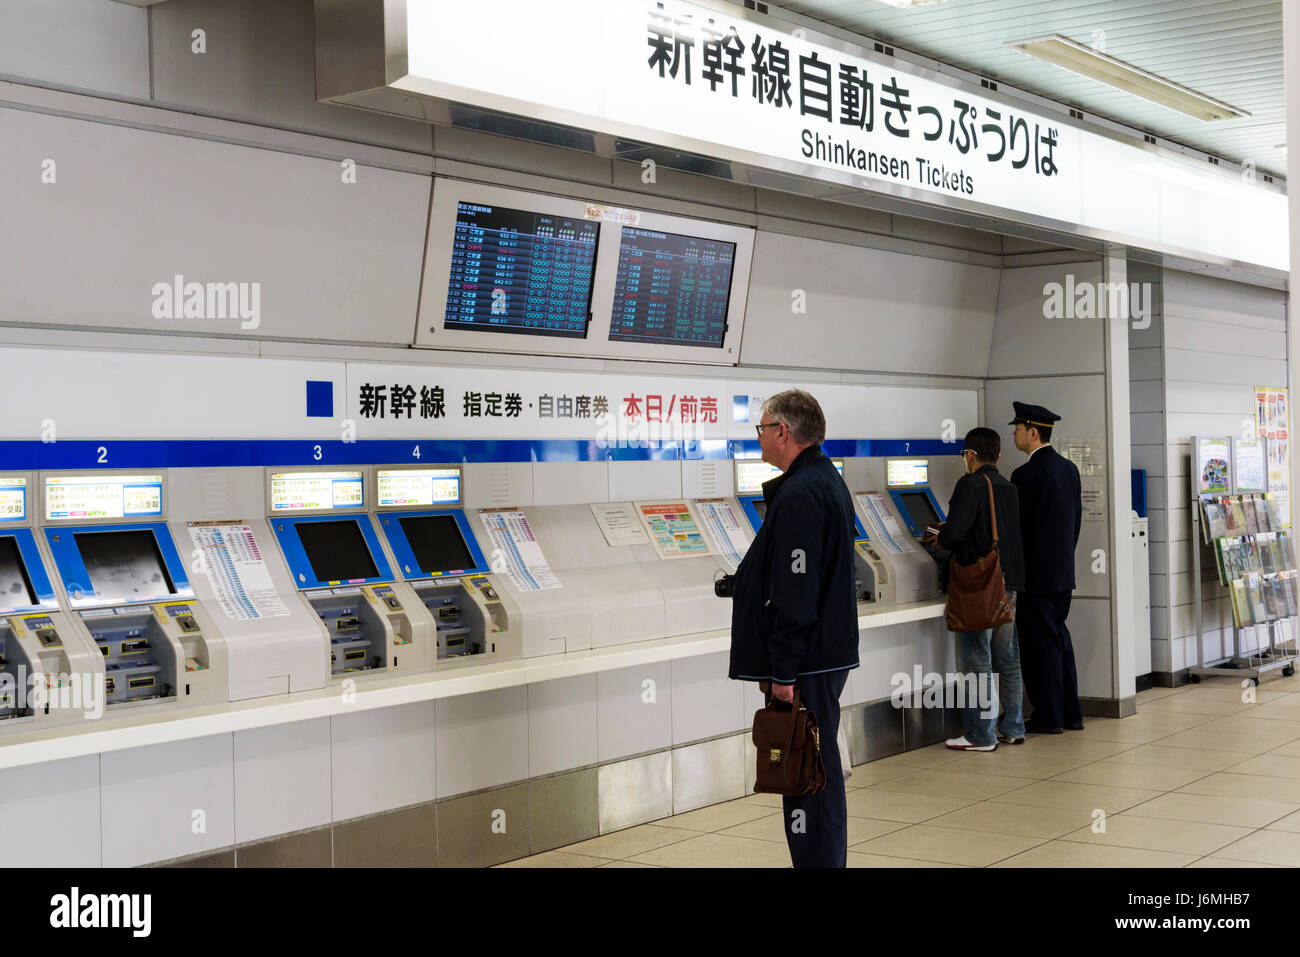 Fahrkartenautomaten für Shinkansen-Züge am Bahnhof Mishima automatisiert. Stockfoto